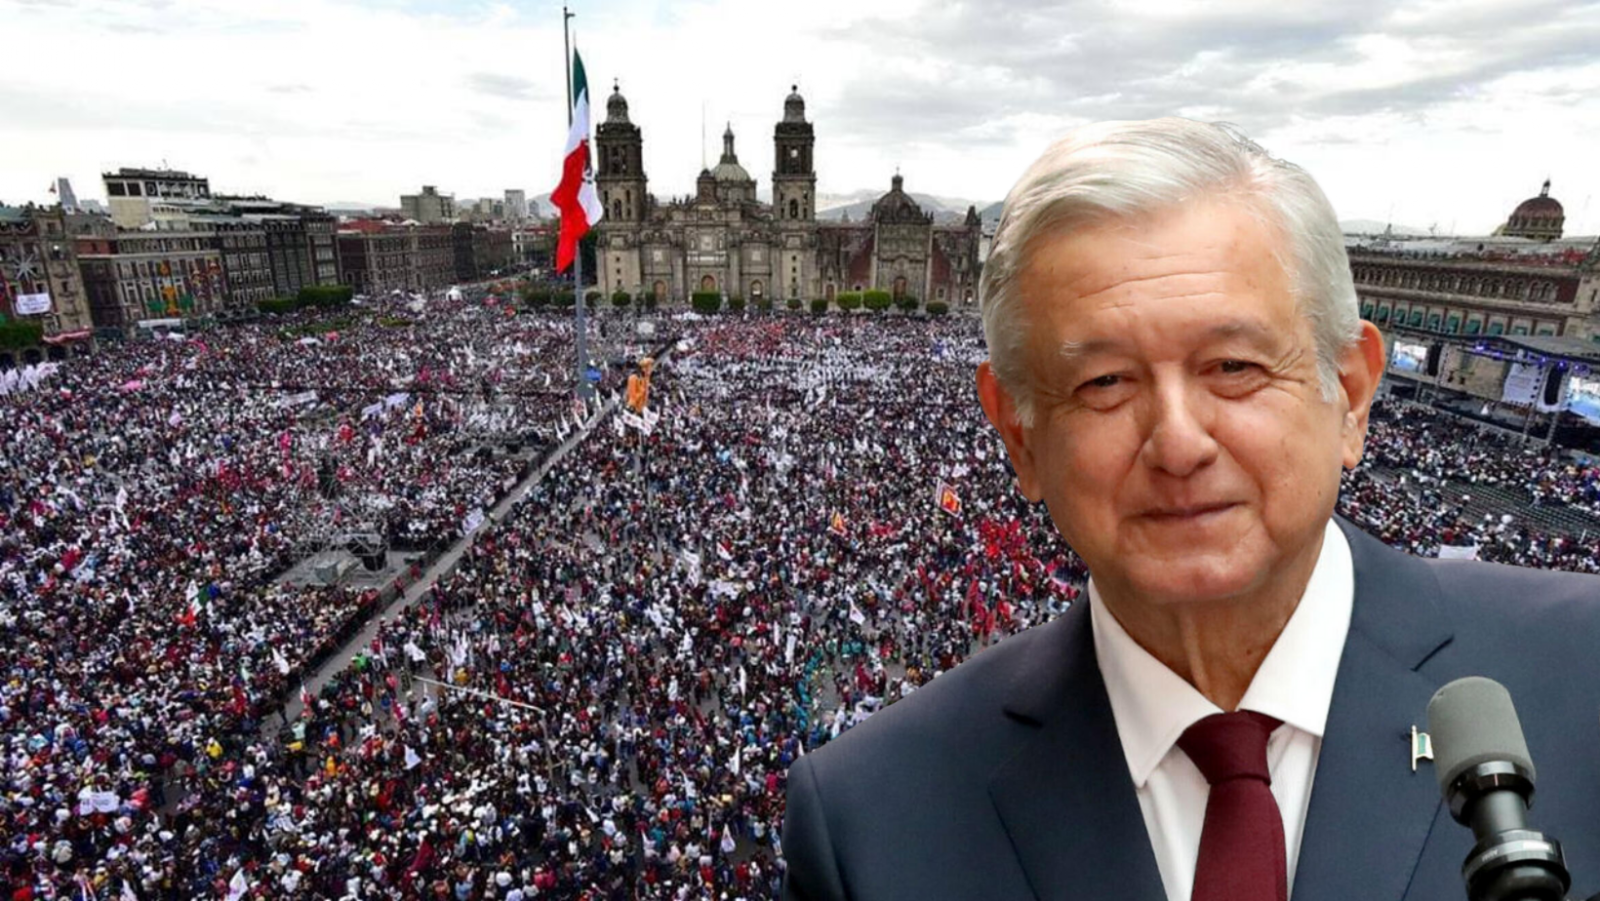 Simpatizantes arman fiesta en el Zócalo para celebrar cumpleaños de AMLO